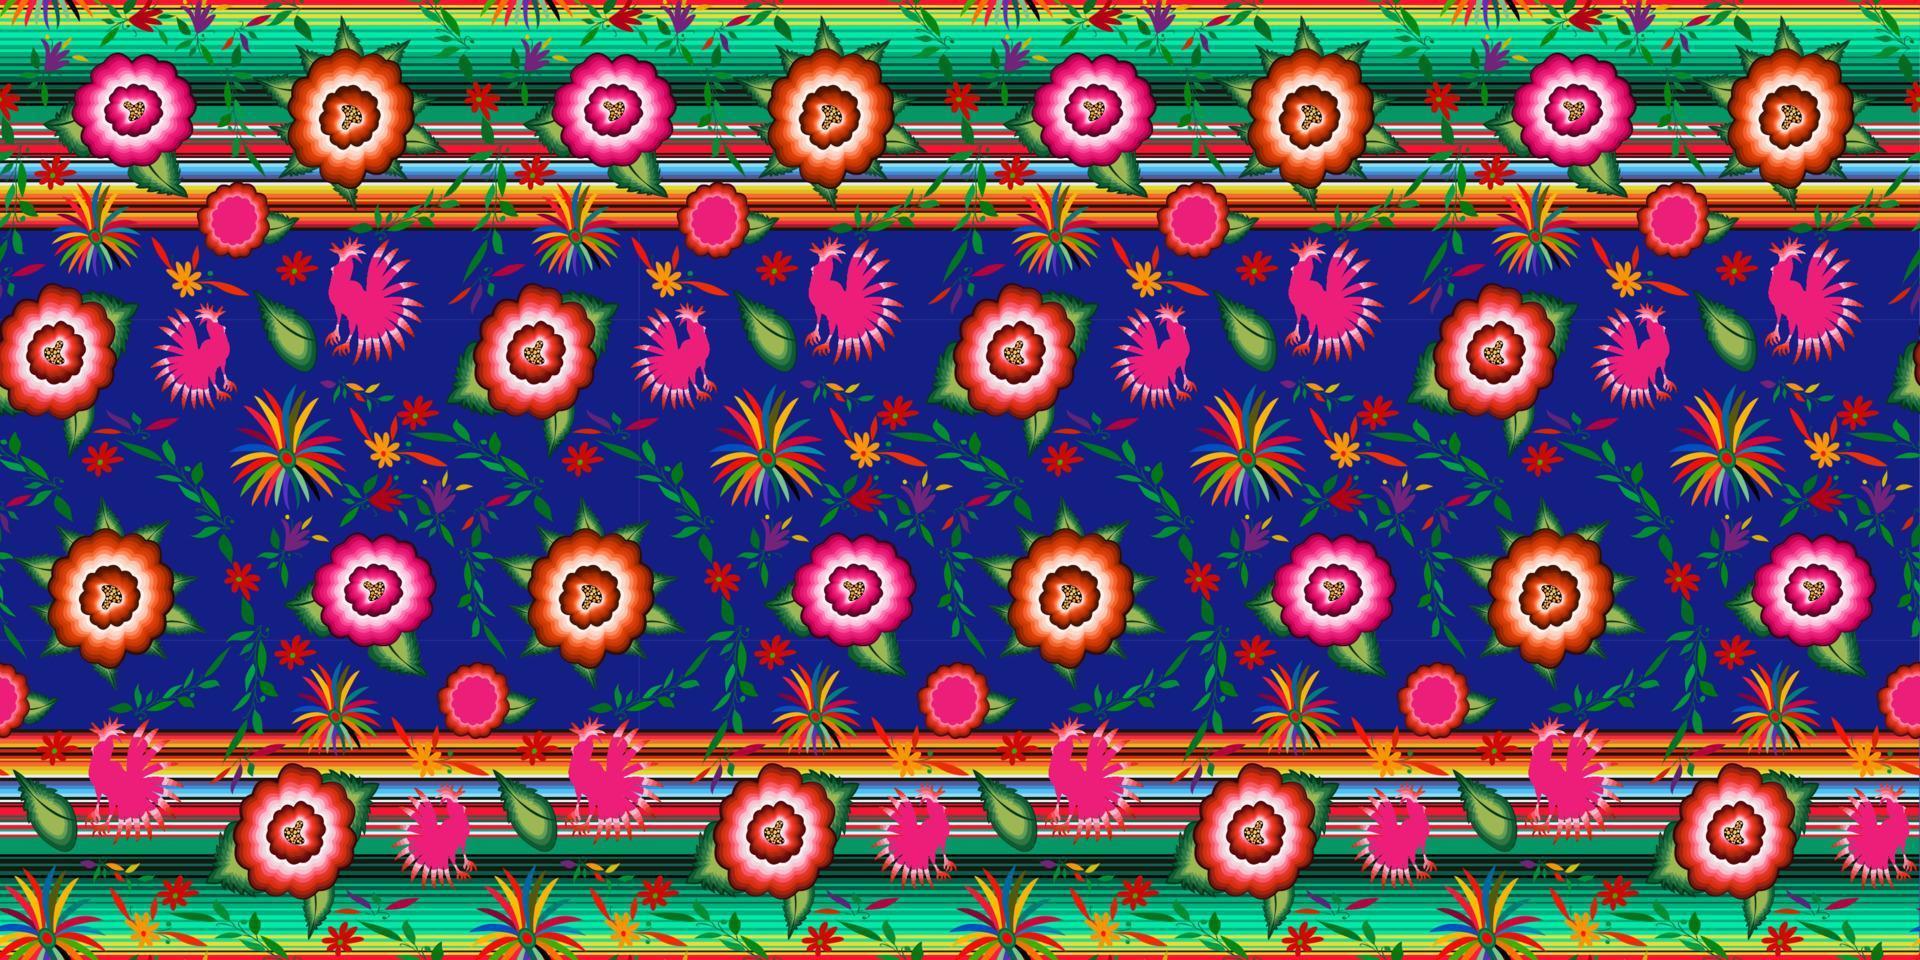 nahtloses mexikanisches Blumenstickmuster, bunte einheimische Blumen-Volksmode-Design. Bestickter traditioneller Textilstil von Mexiko, Farben gestreift, Vektor auf blauem Hintergrund isoliert